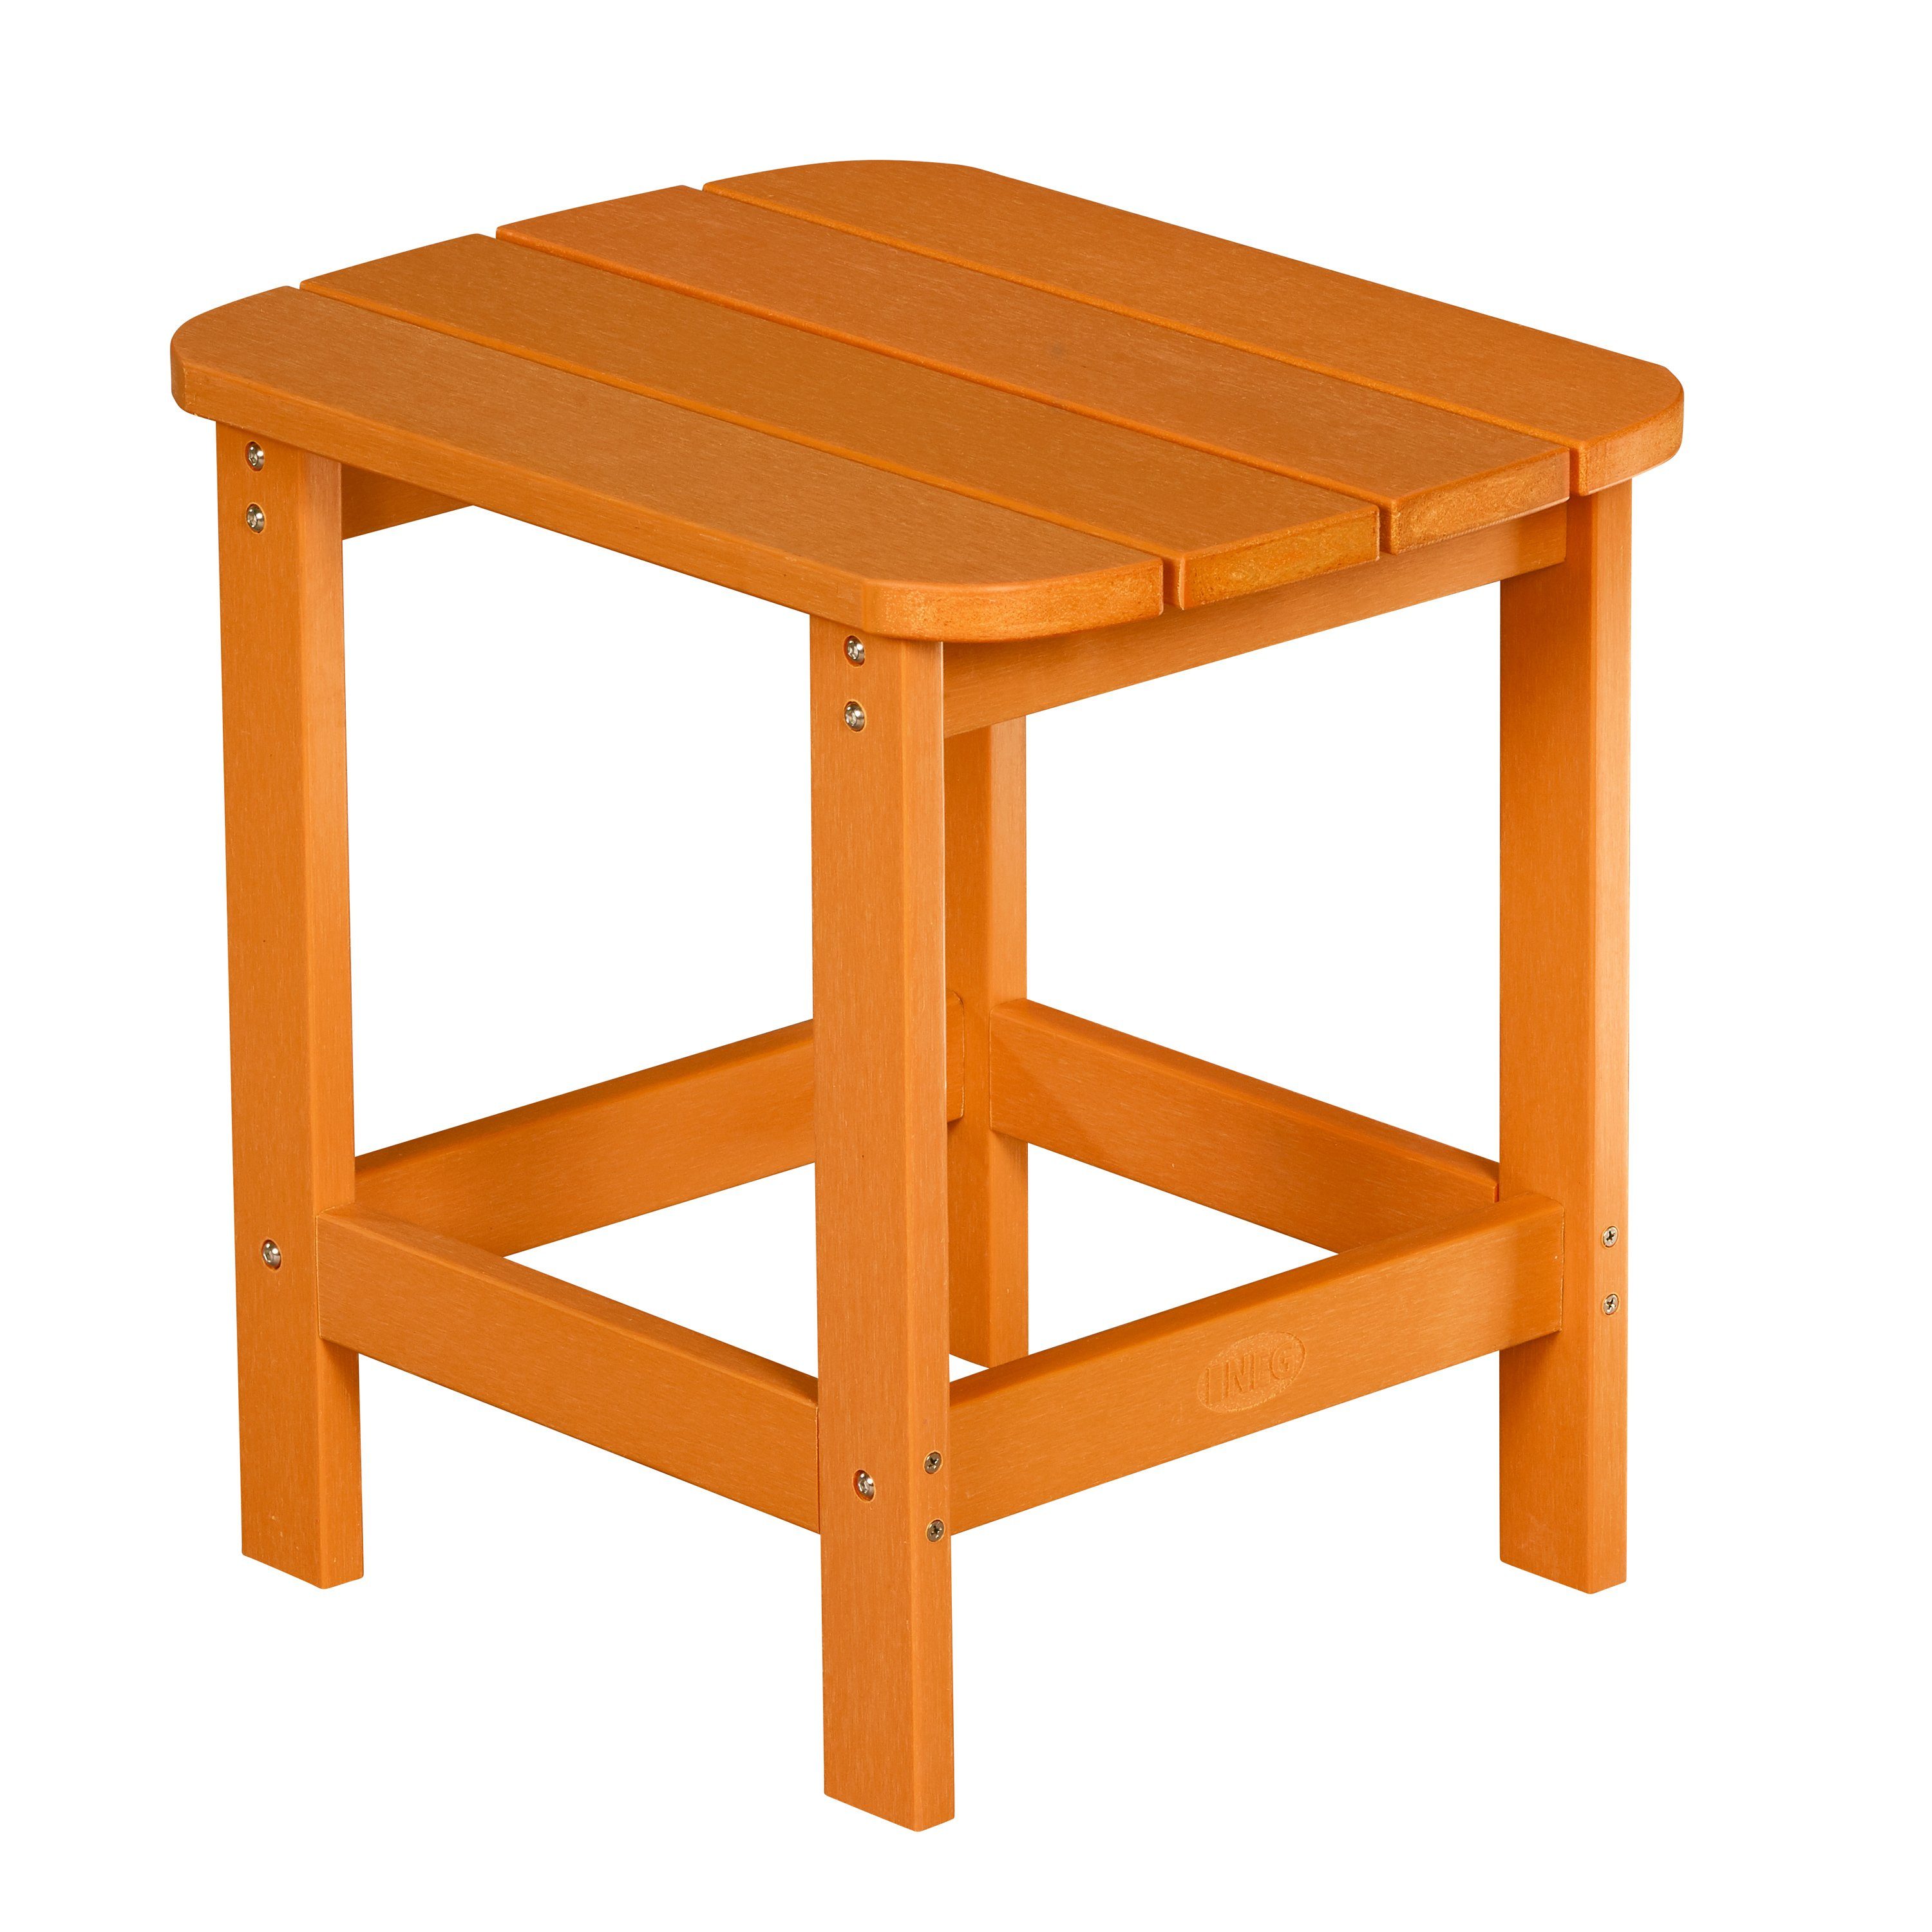 NEG Gartenstuhl NEG Adirondack Tisch/Beistelltisch MARCY orange